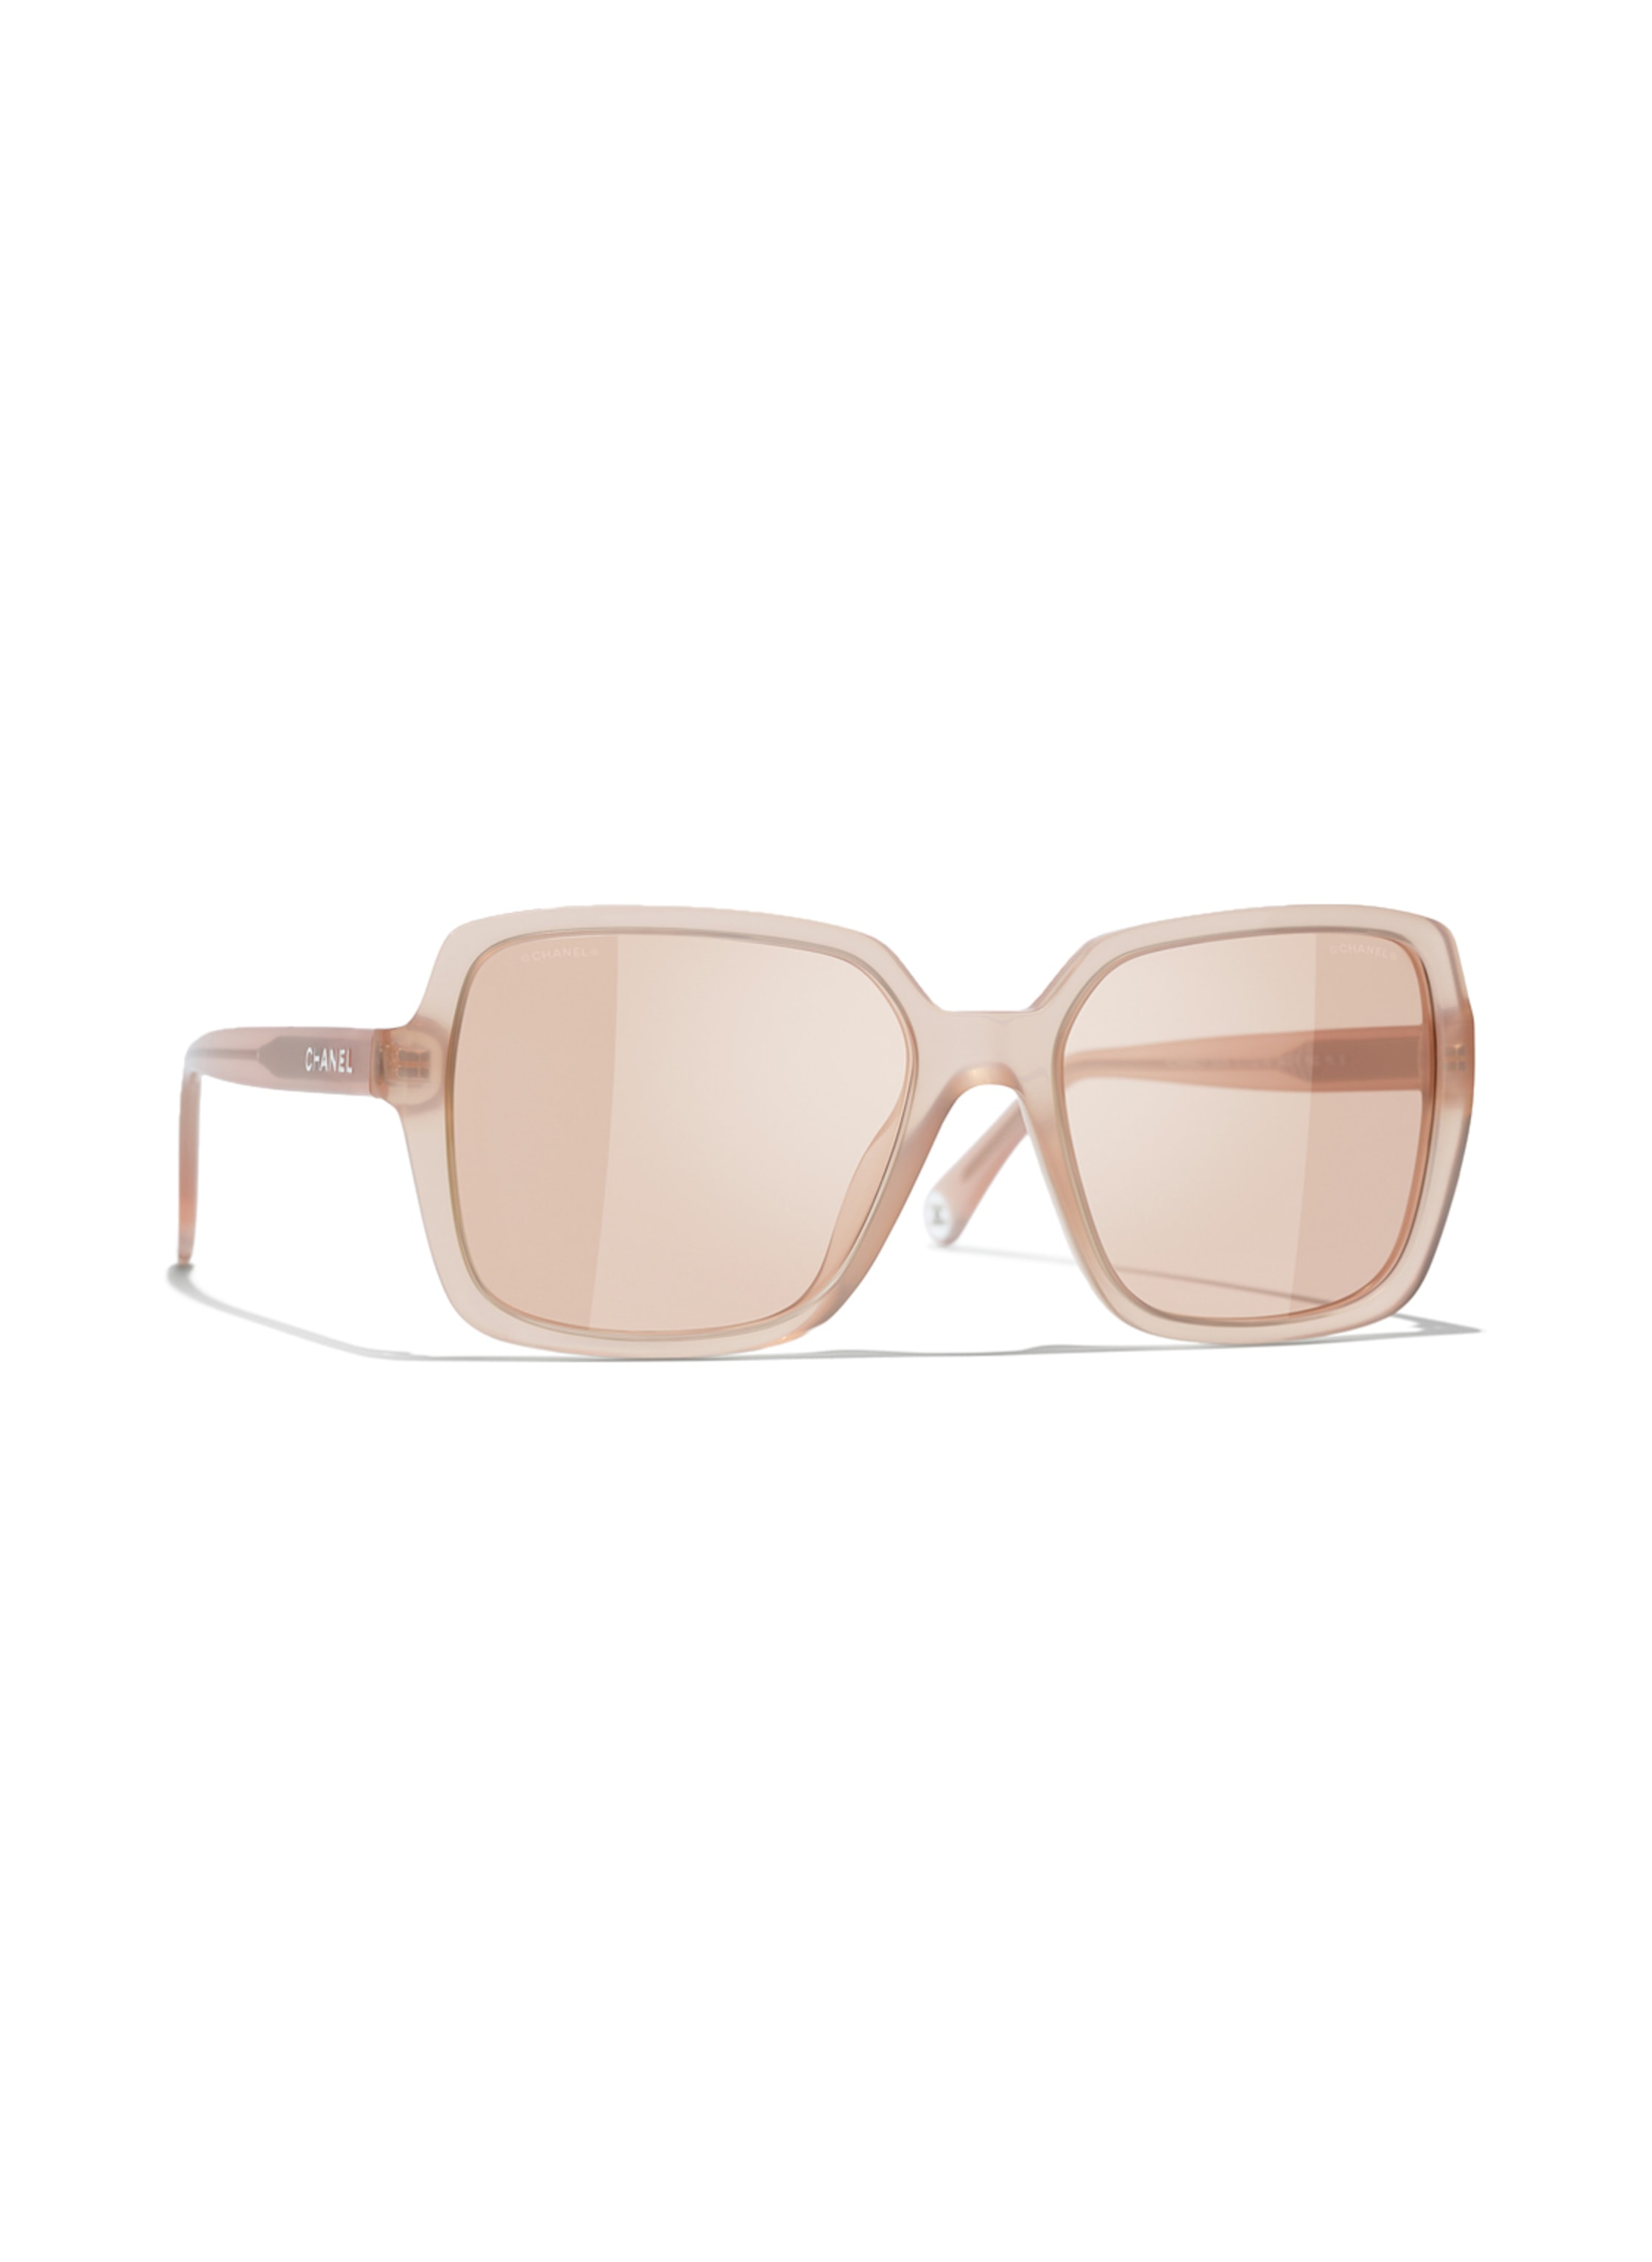 Sunglasses Oval Sunglasses acetate  Fashion  CHANEL